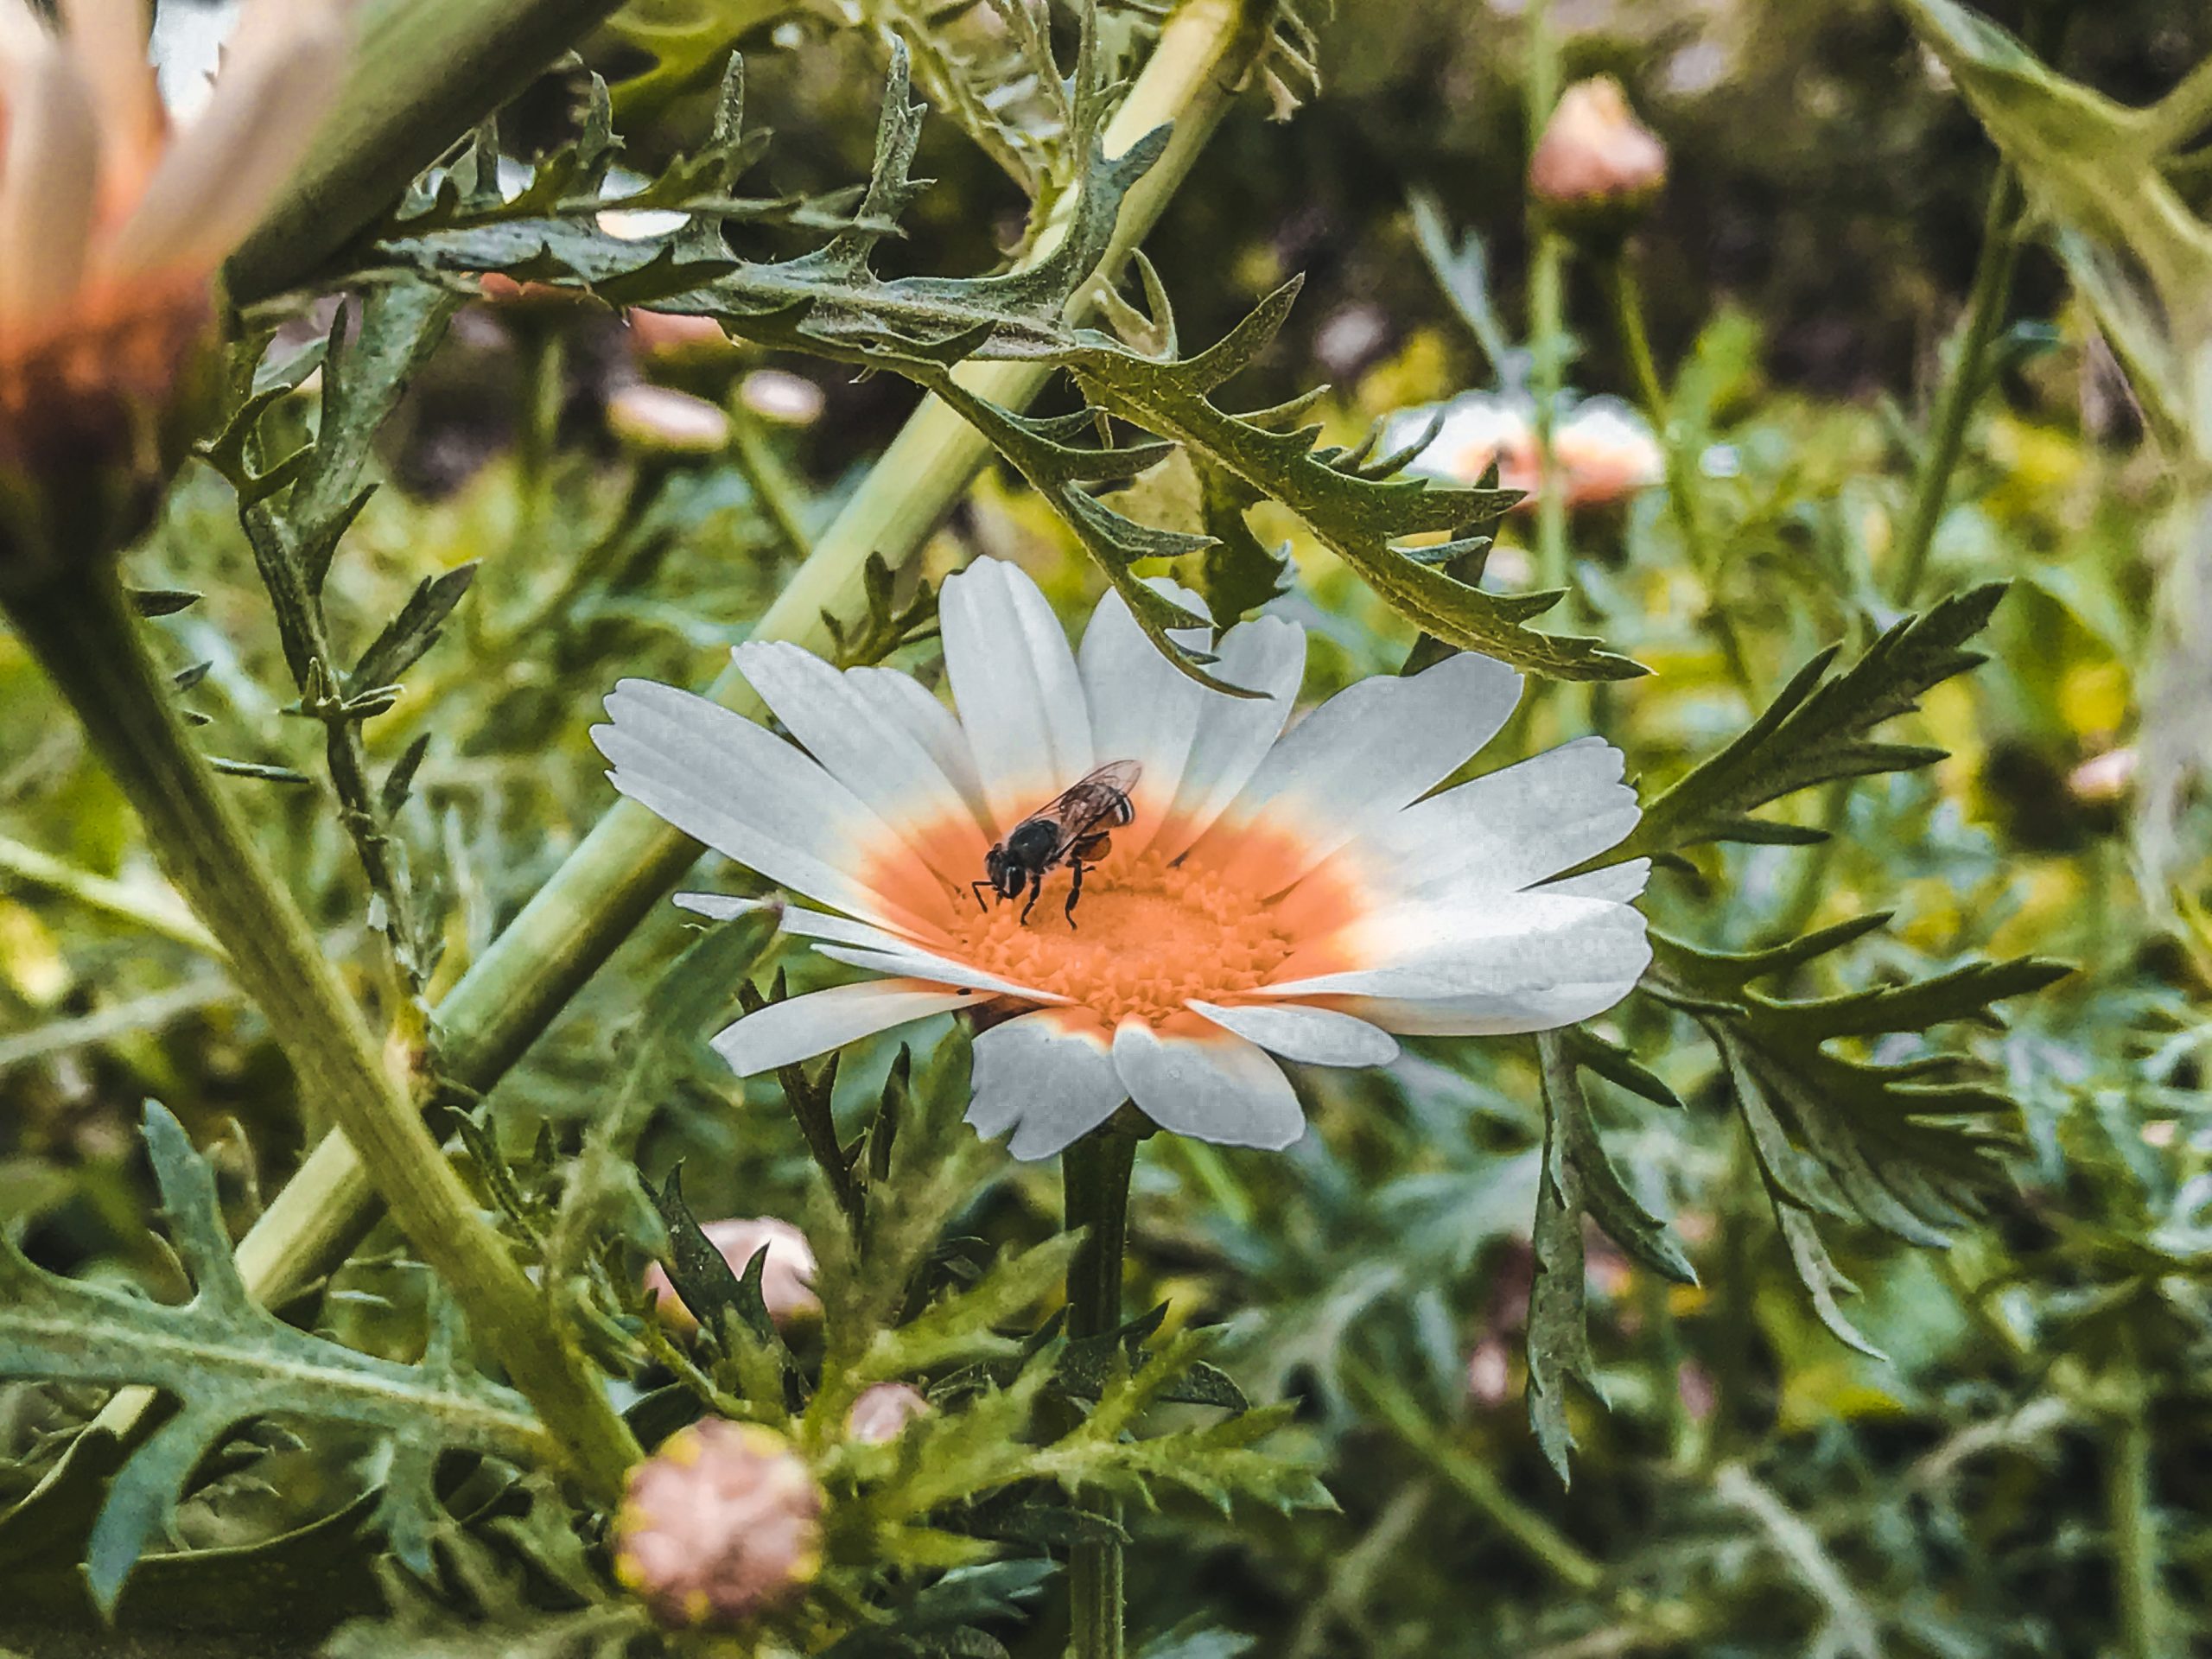 Honey bee on the flower